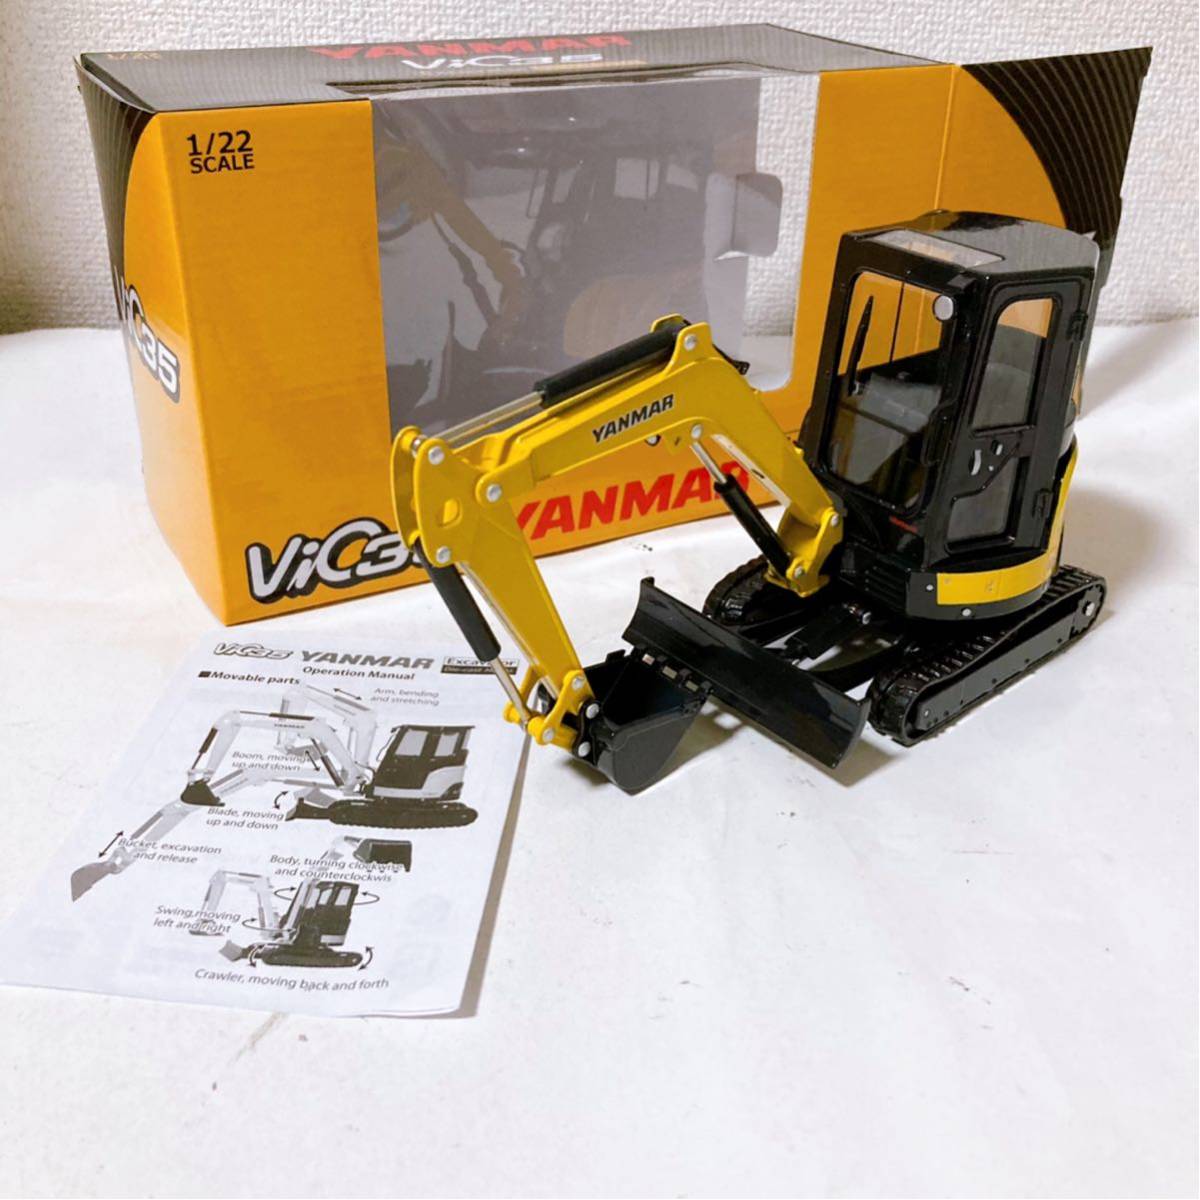 ヤンマー Vio35 1/22 油圧ショベル 【YANMAR Excavator ダイキャストメタル】